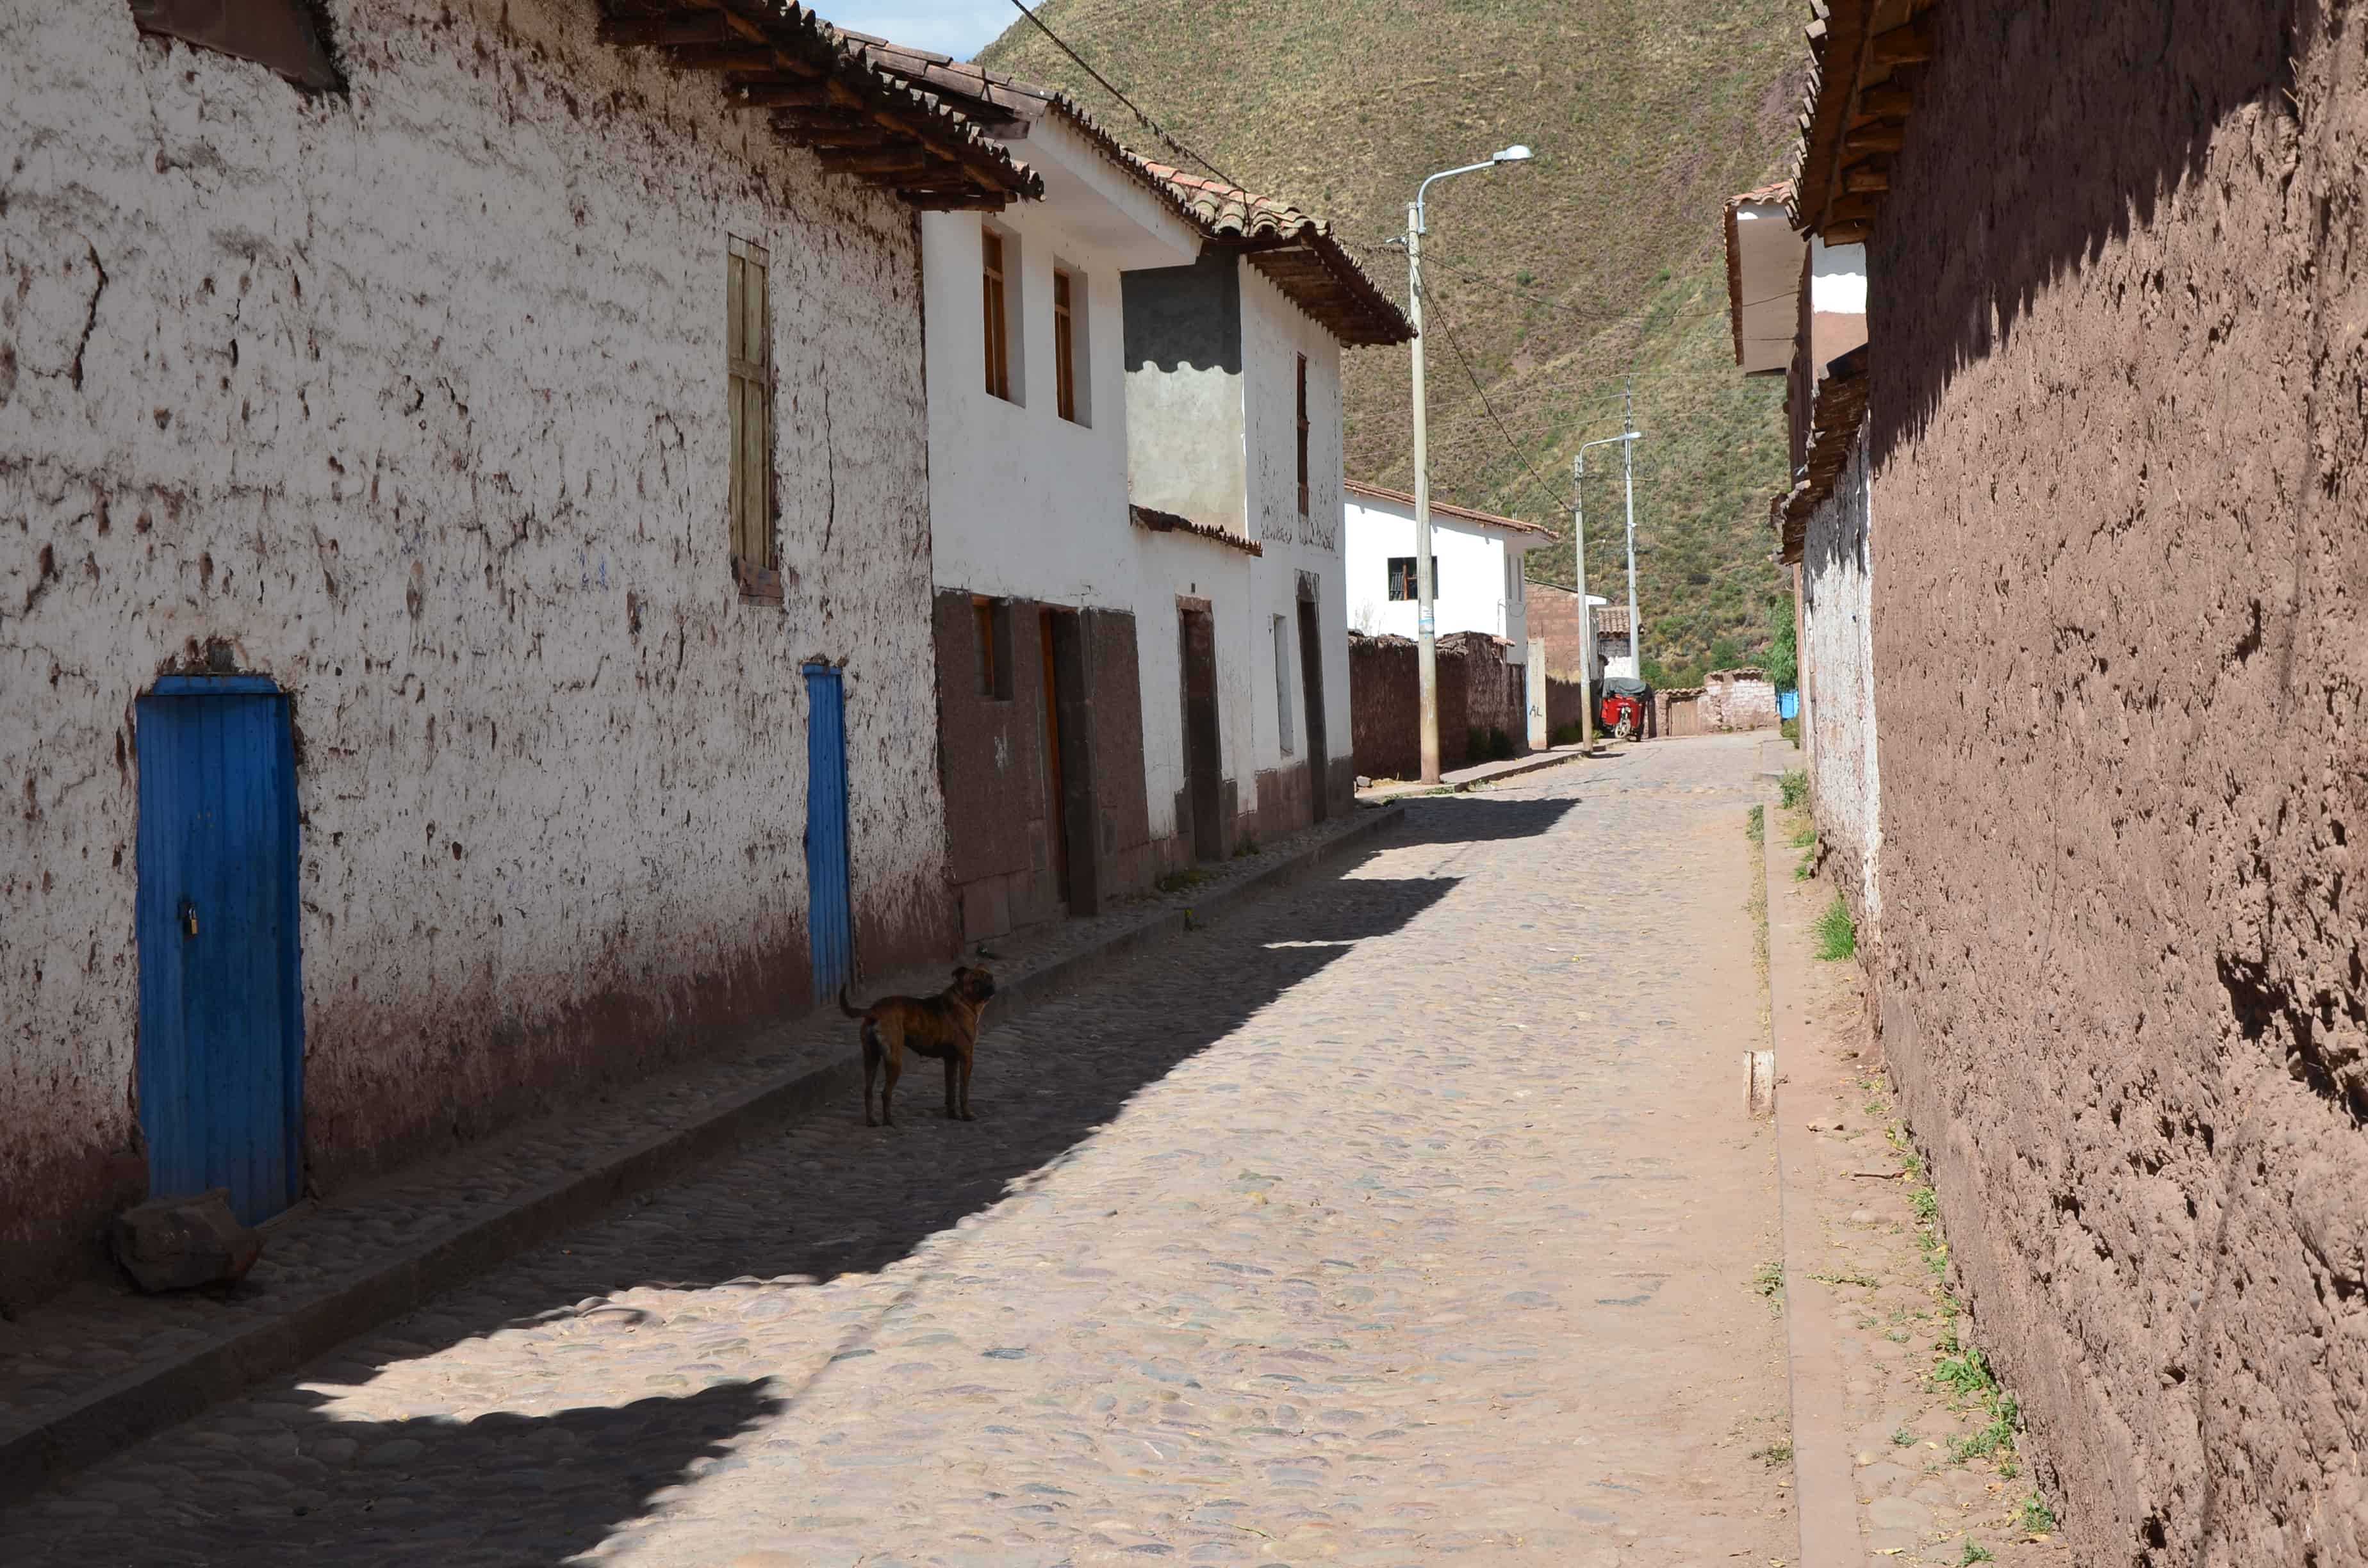 A street in Andahuaylillas, Peru